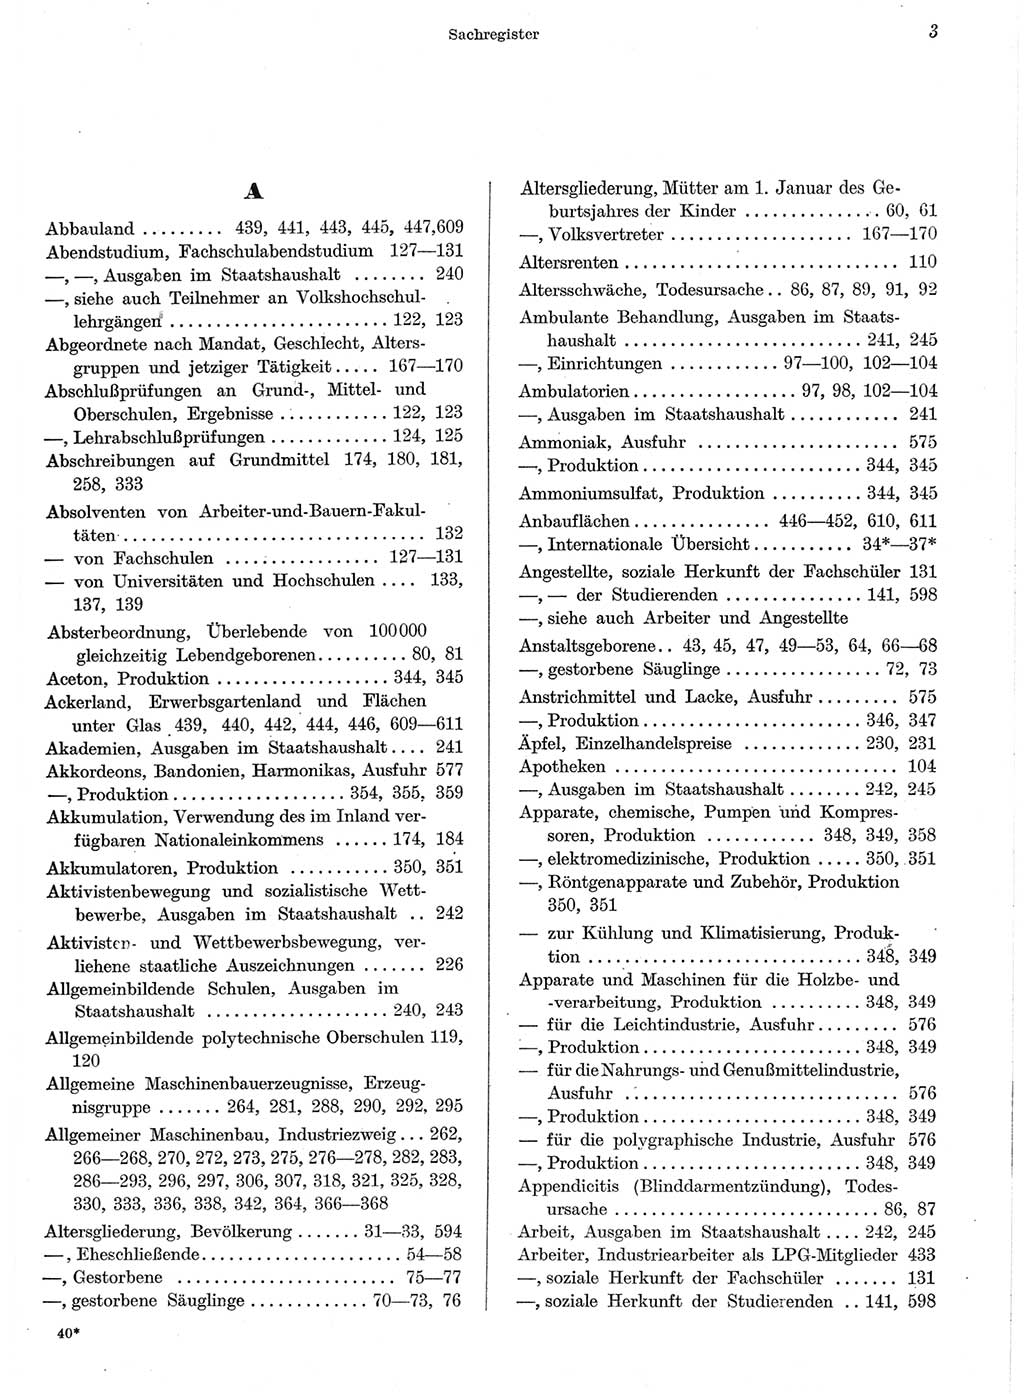 Statistisches Jahrbuch der Deutschen Demokratischen Republik (DDR) 1959, Seite 3 (Stat. Jb. DDR 1959, S. 3)